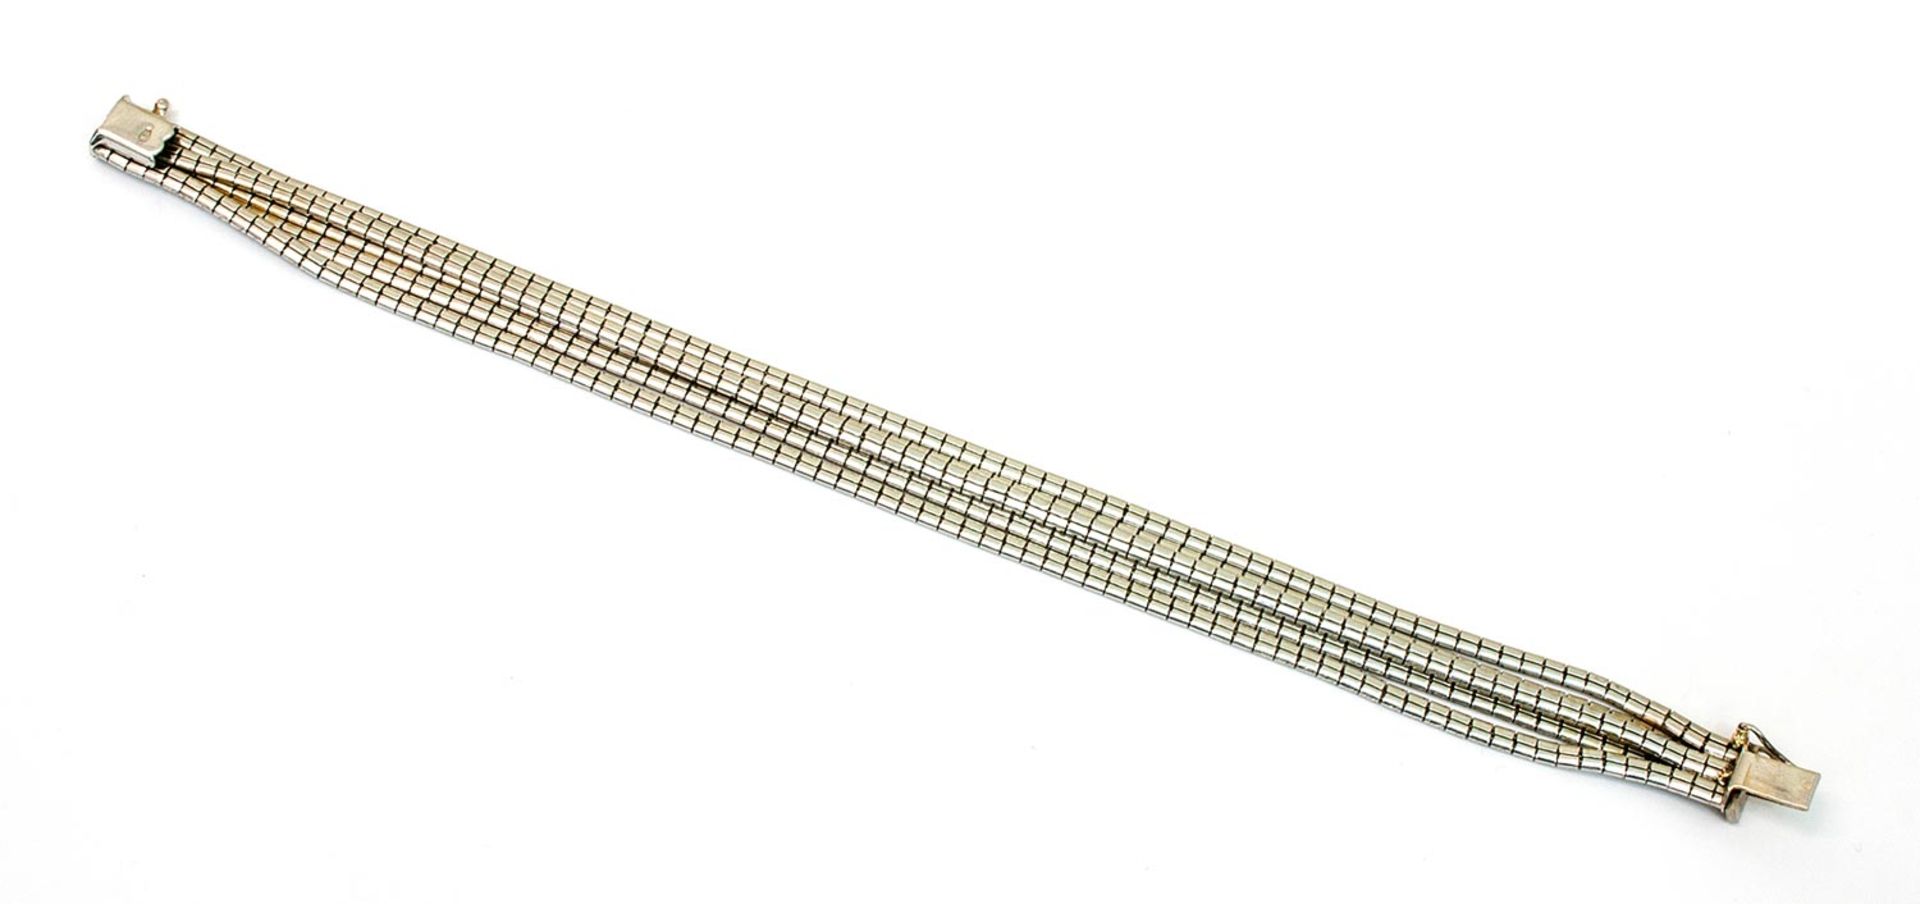 Armband 750er WG, 32,2 g, 5 gebürstete Schlangenketten, nebeneinander angeordnet, Steckverschluß mit